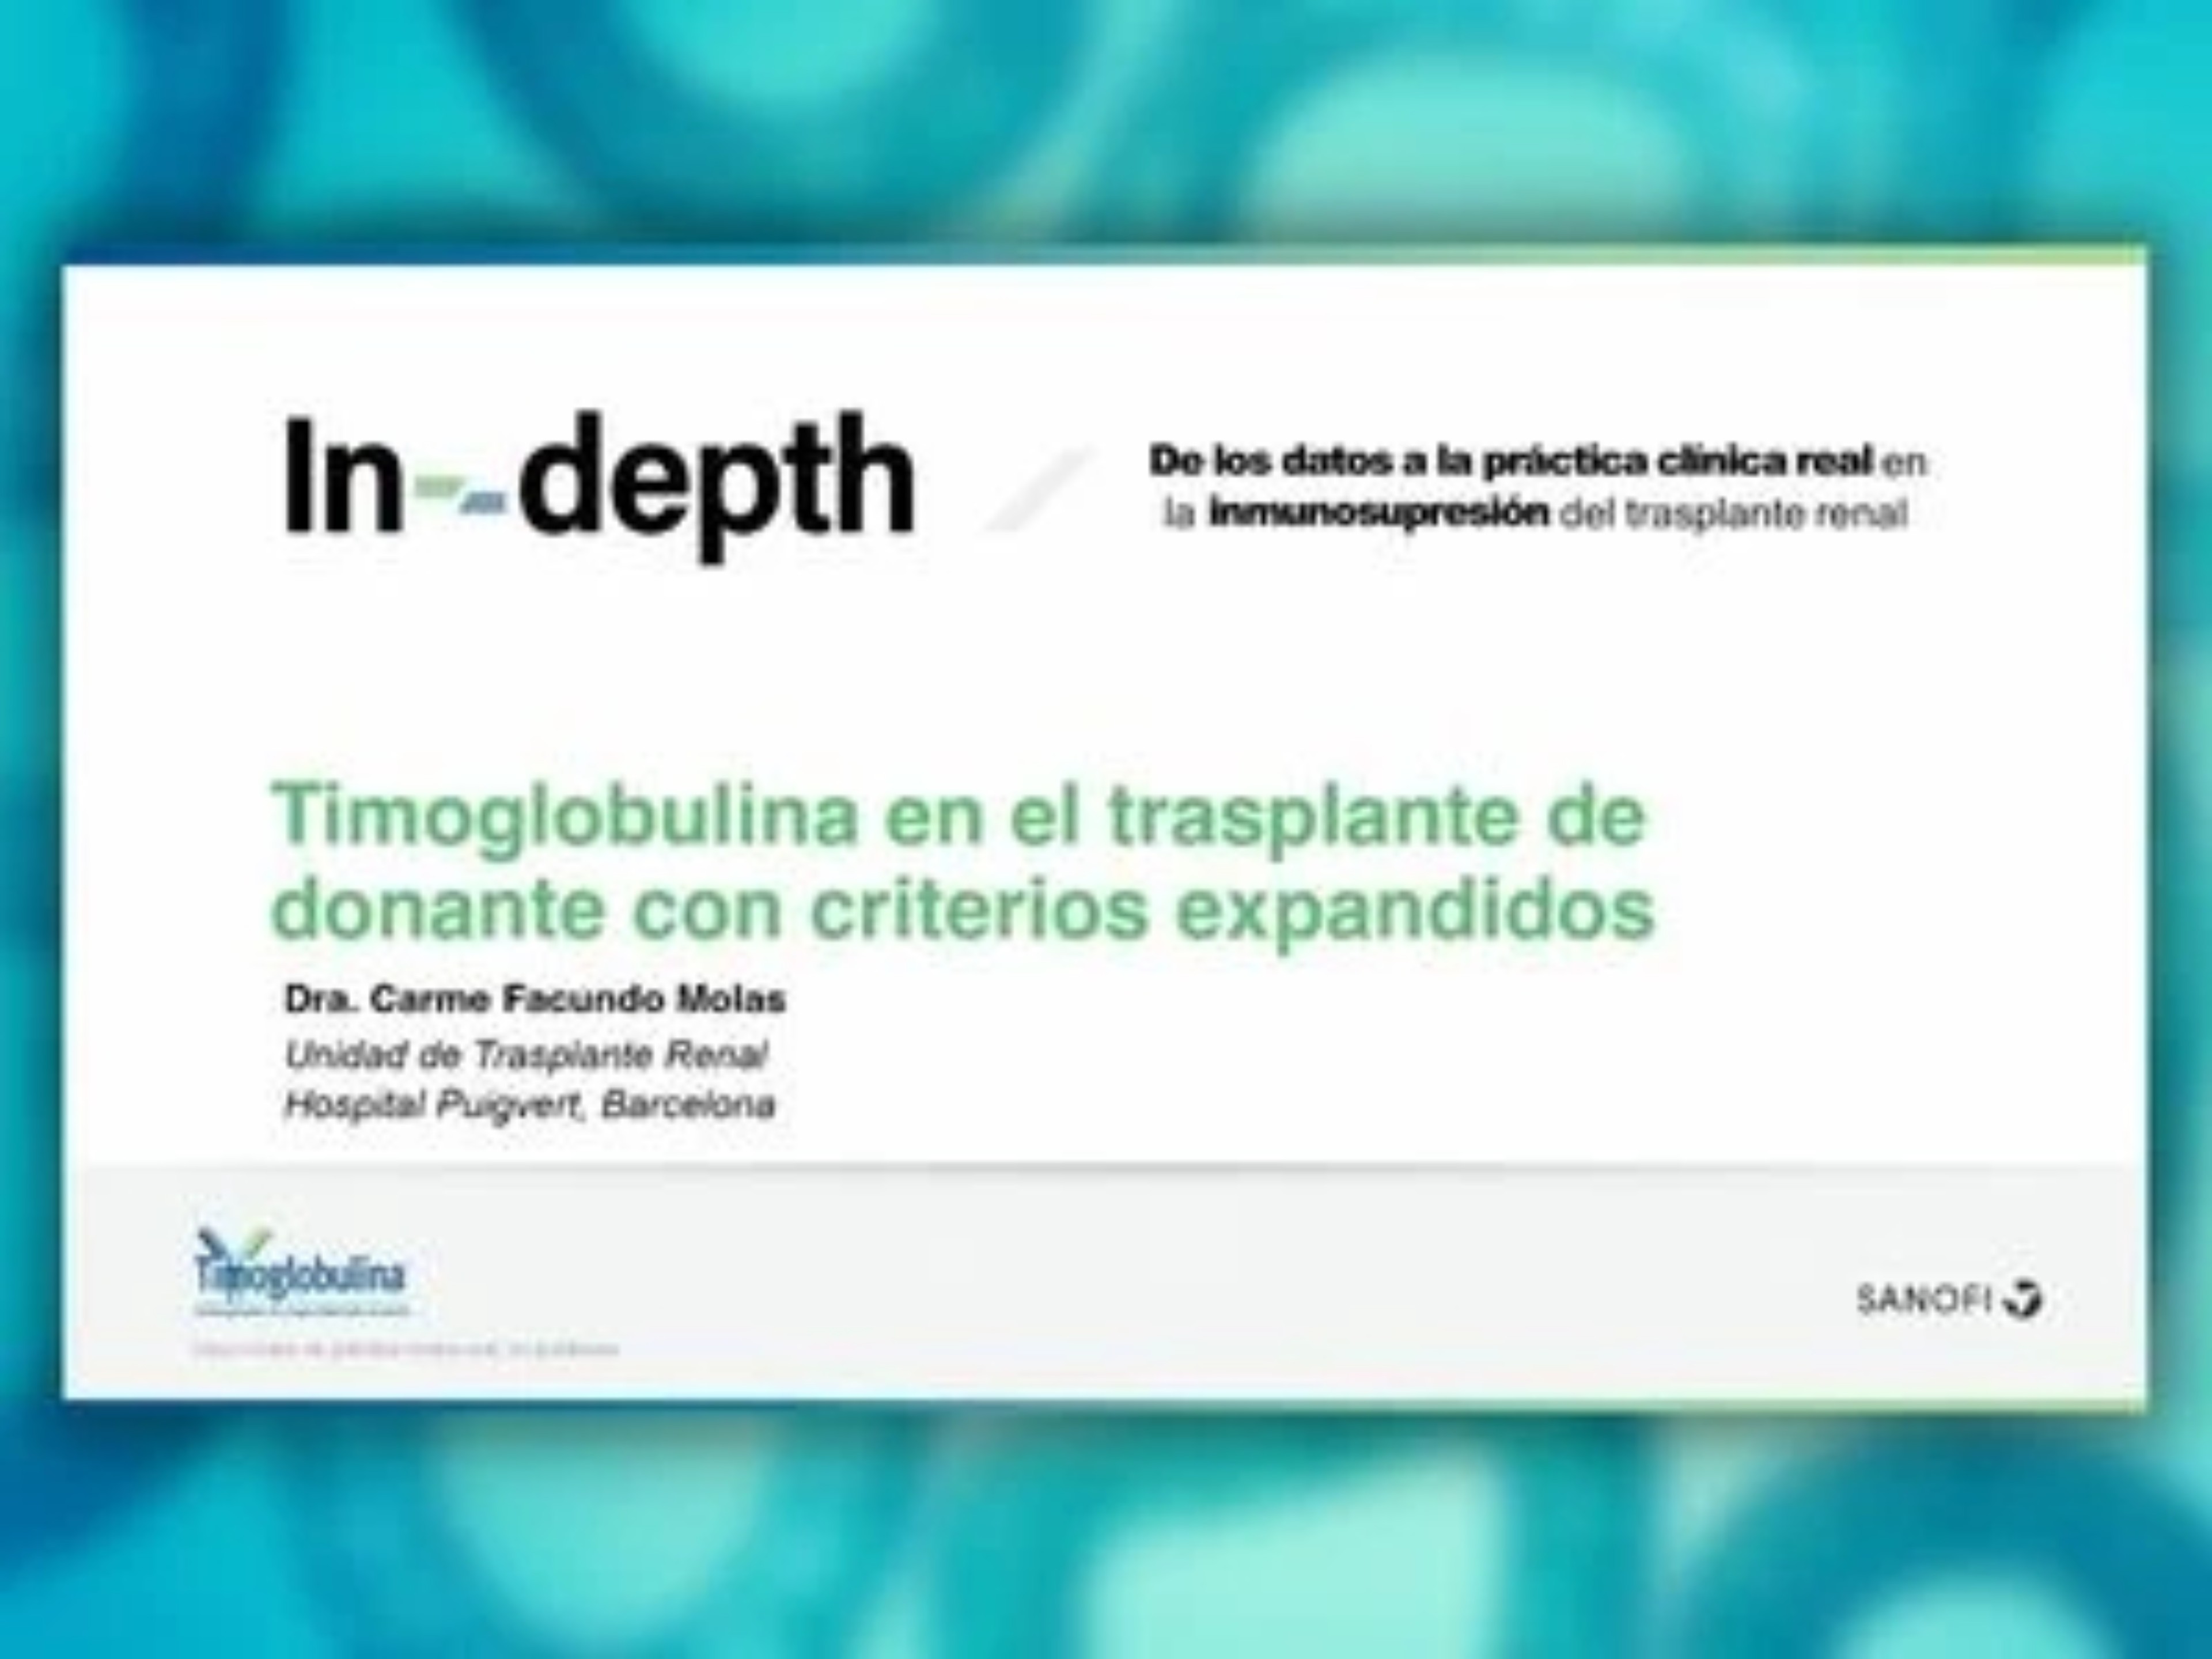 Timoglobulina en el Trasplante Renal de donante con criterios expandidos